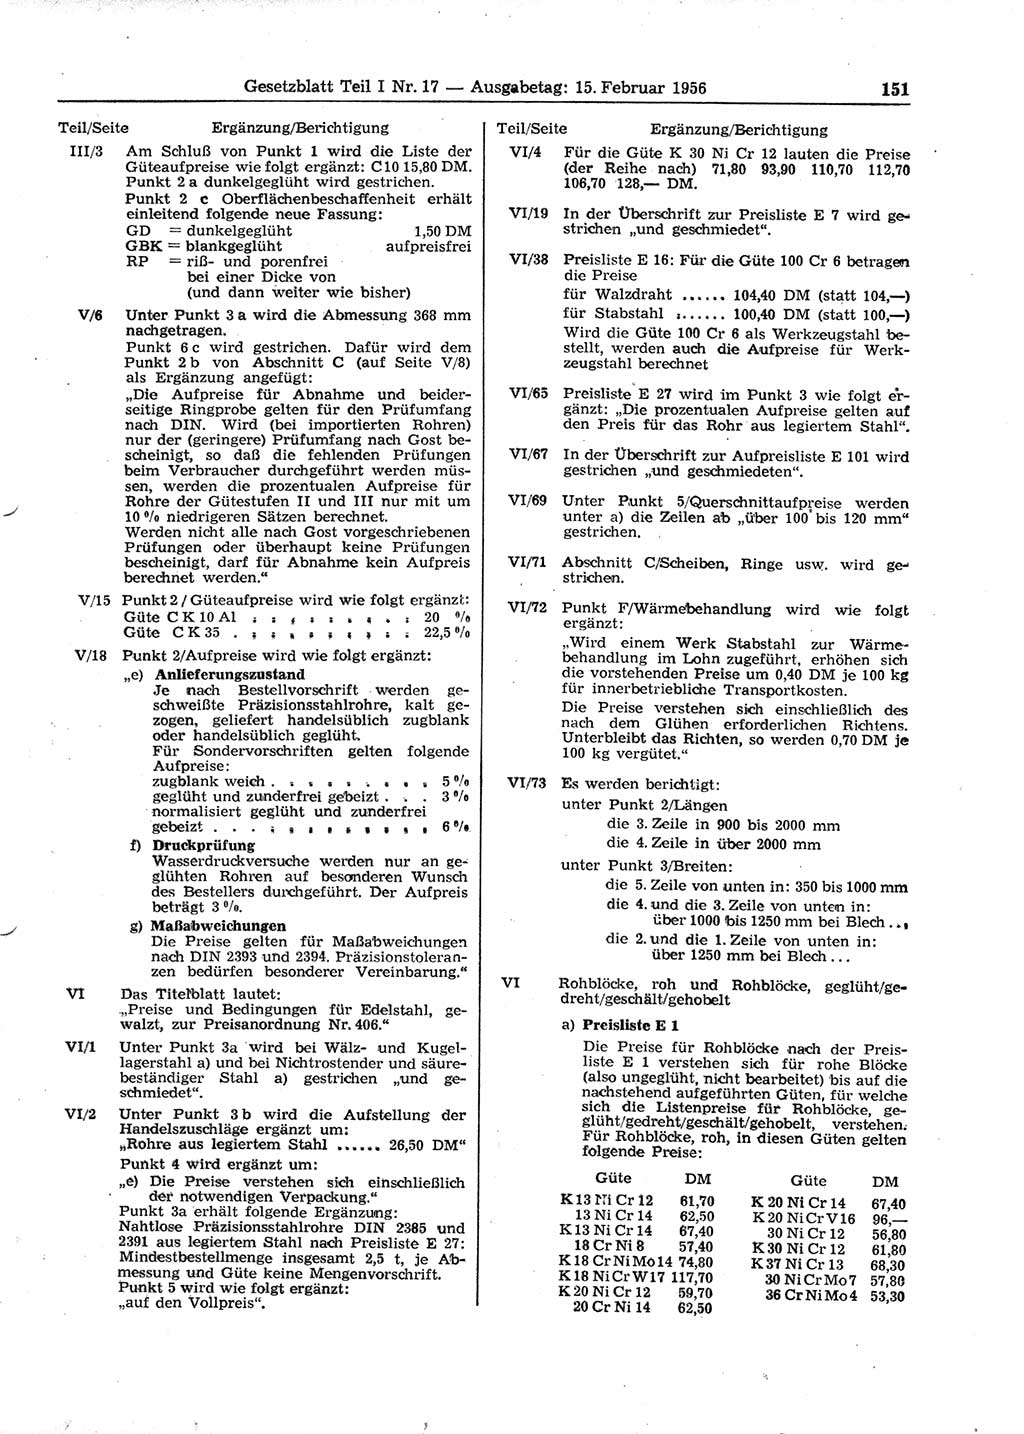 Gesetzblatt (GBl.) der Deutschen Demokratischen Republik (DDR) Teil Ⅰ 1956, Seite 151 (GBl. DDR Ⅰ 1956, S. 151)